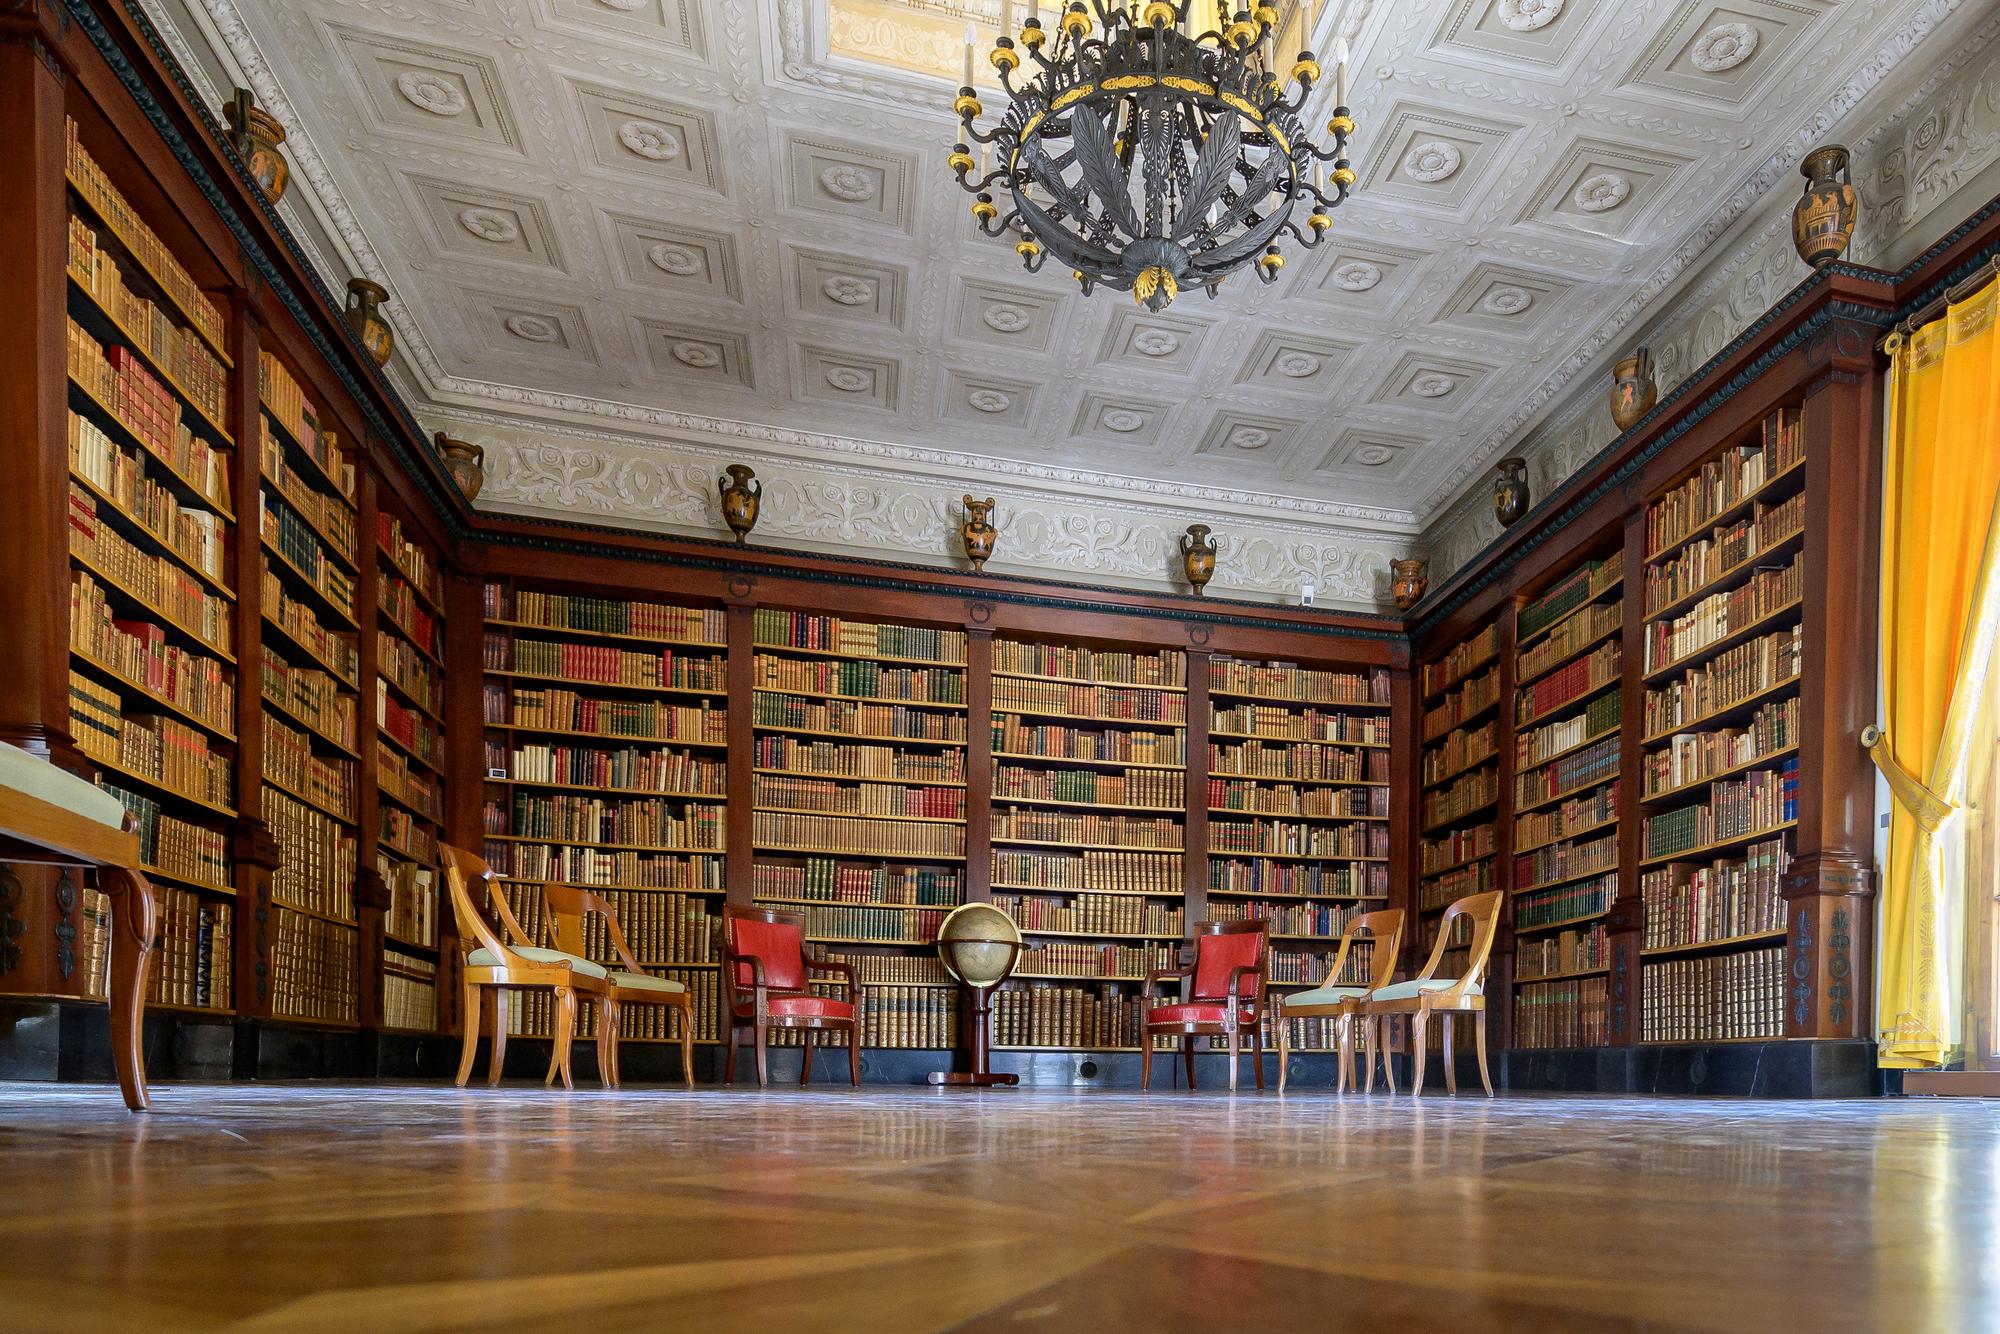 La bibliothèque de la villa La Grange, pièce dans laquelle est prévue la rencontre entre les président Biden et Poutine. [AFP - Fabrice Coffrini]